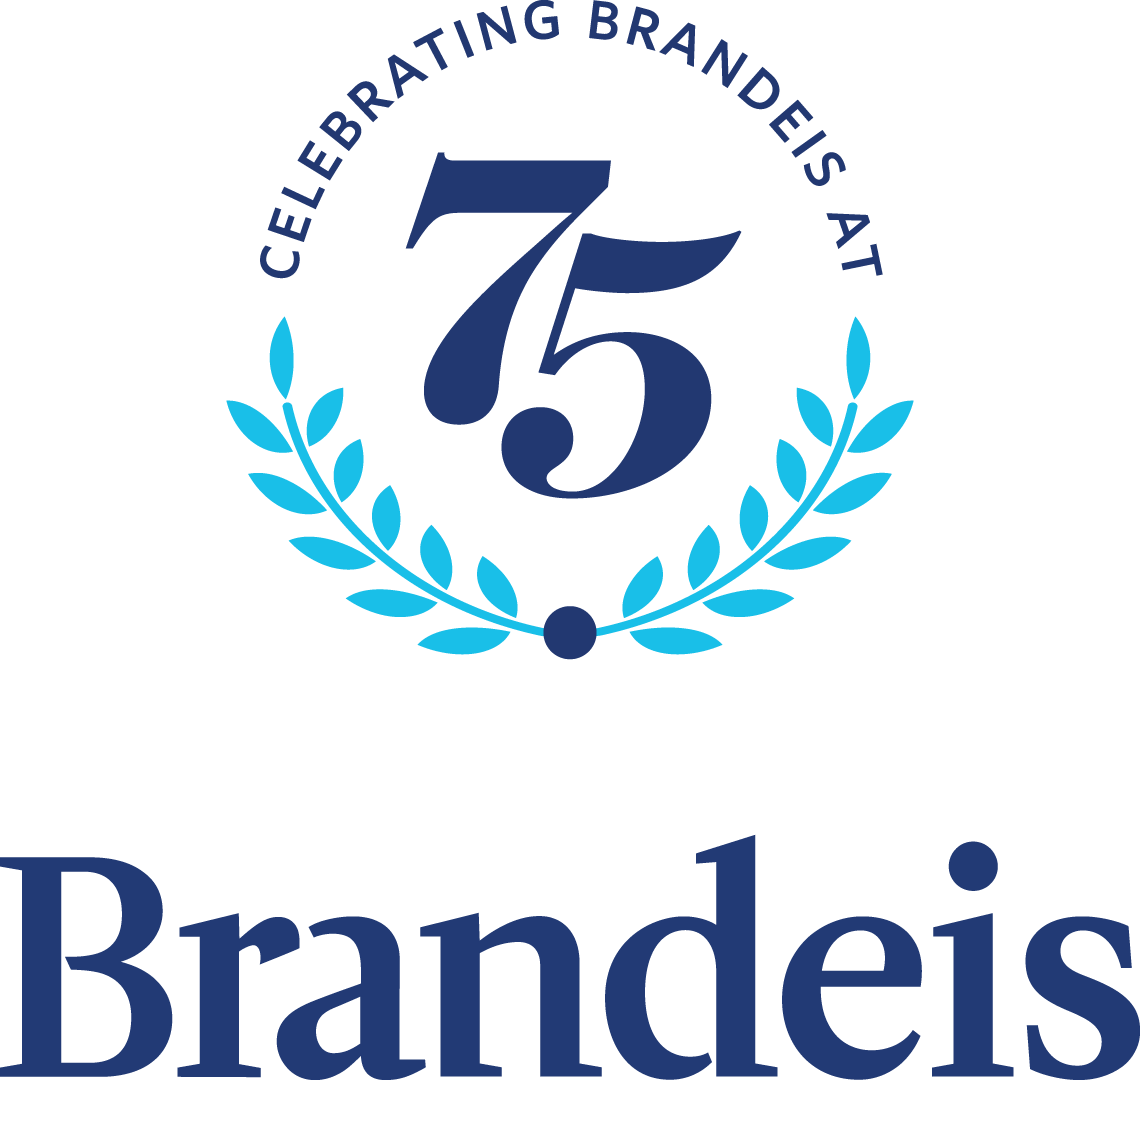 Logo is circular image that says "Celebrating Brandeis at 75"